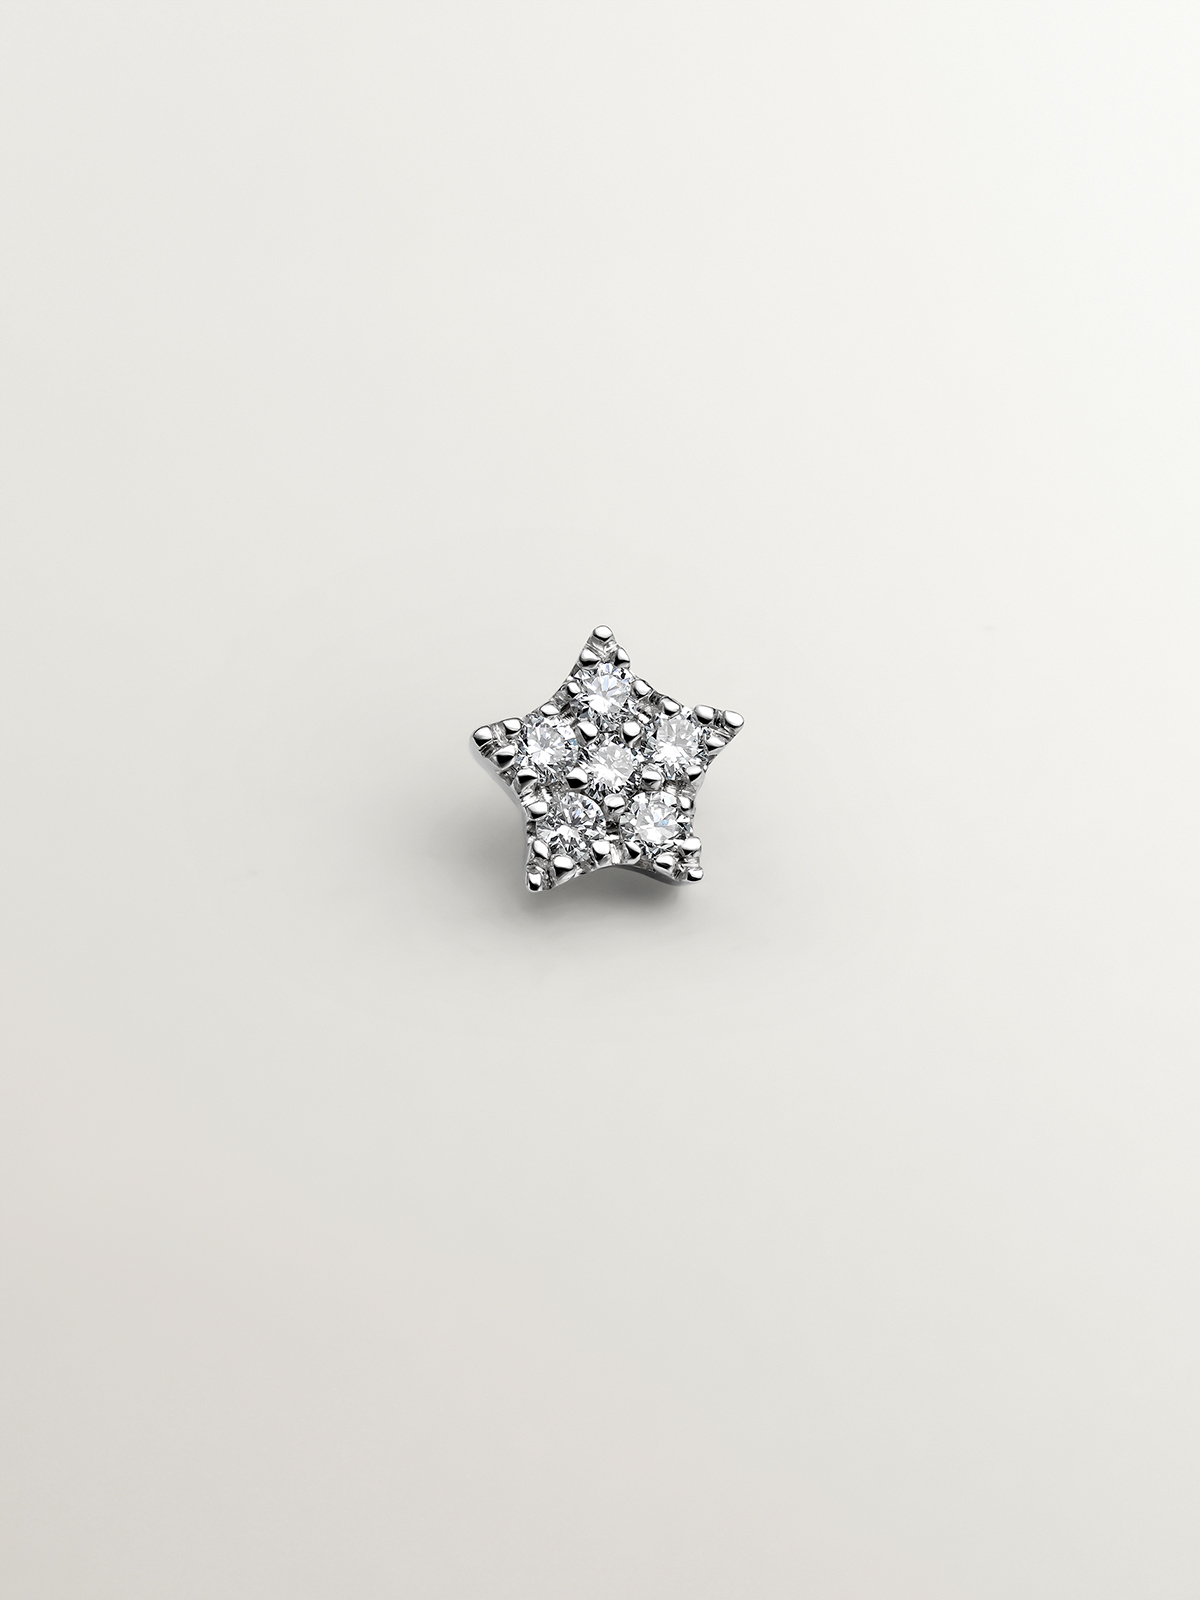 Piercing de oro blanco de 18K con diamantes 0,05 cts y forma de estrella